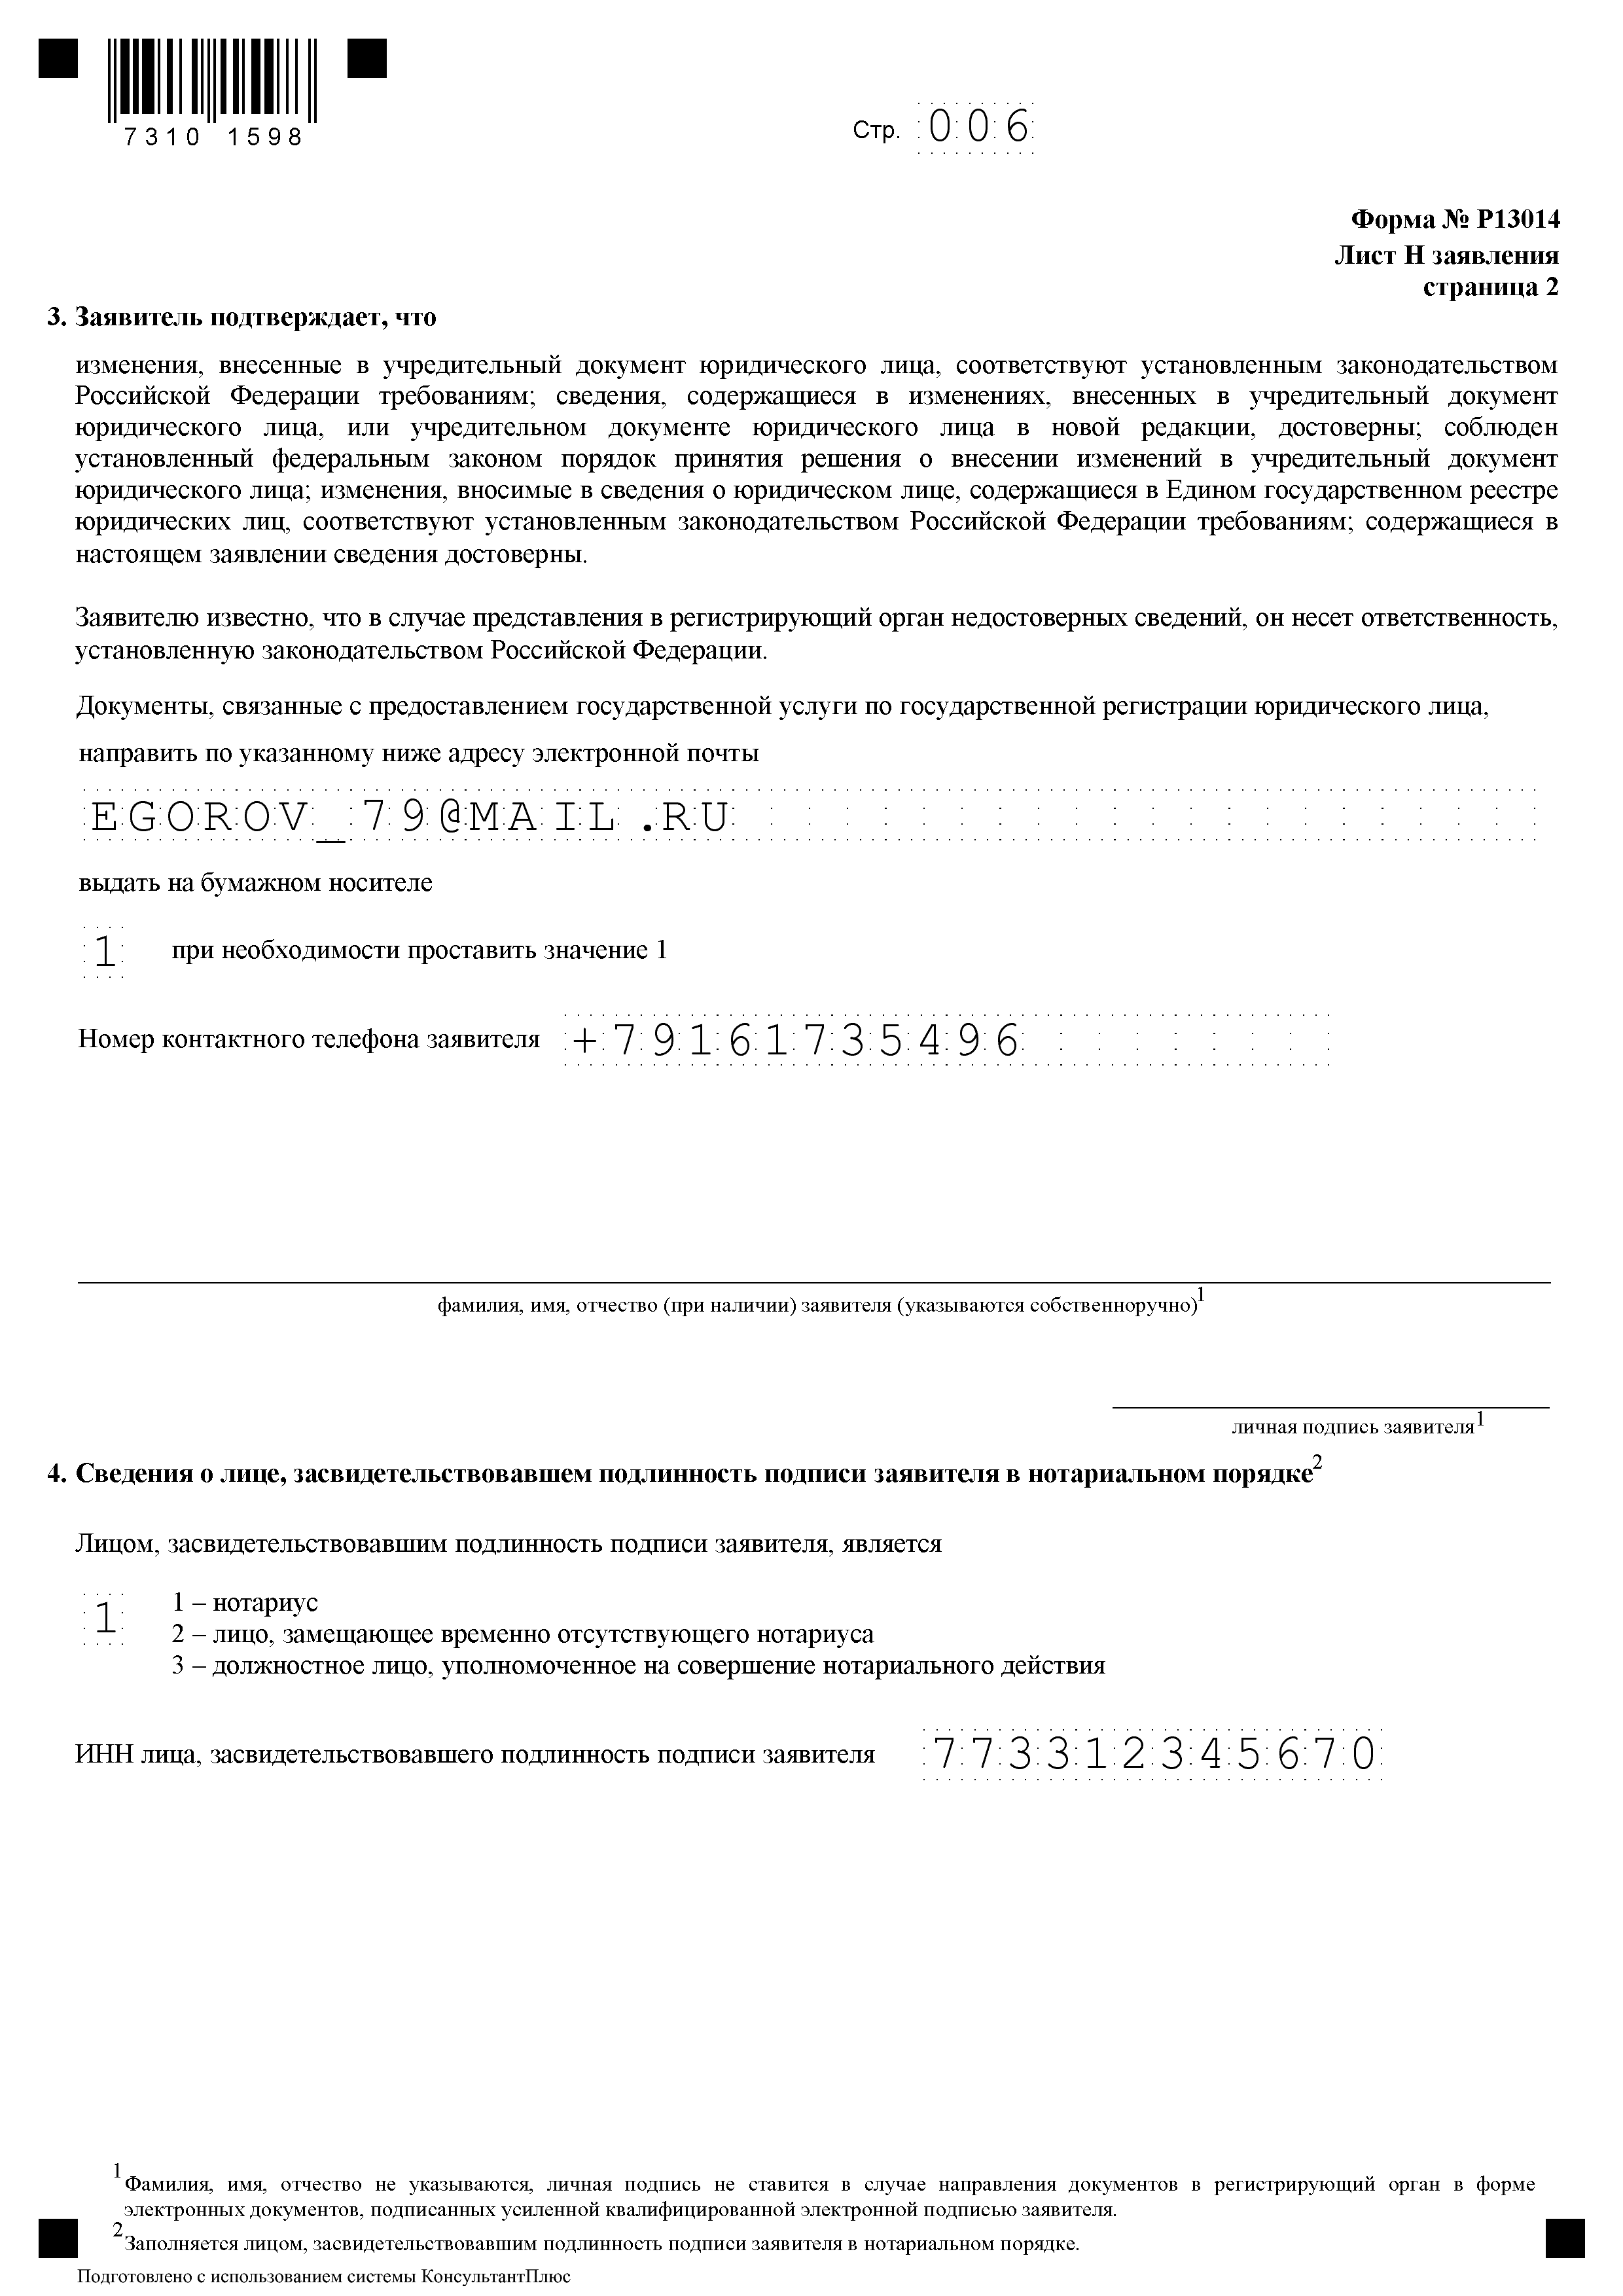 Образец заполнения формы р13014 при смене юридического адреса